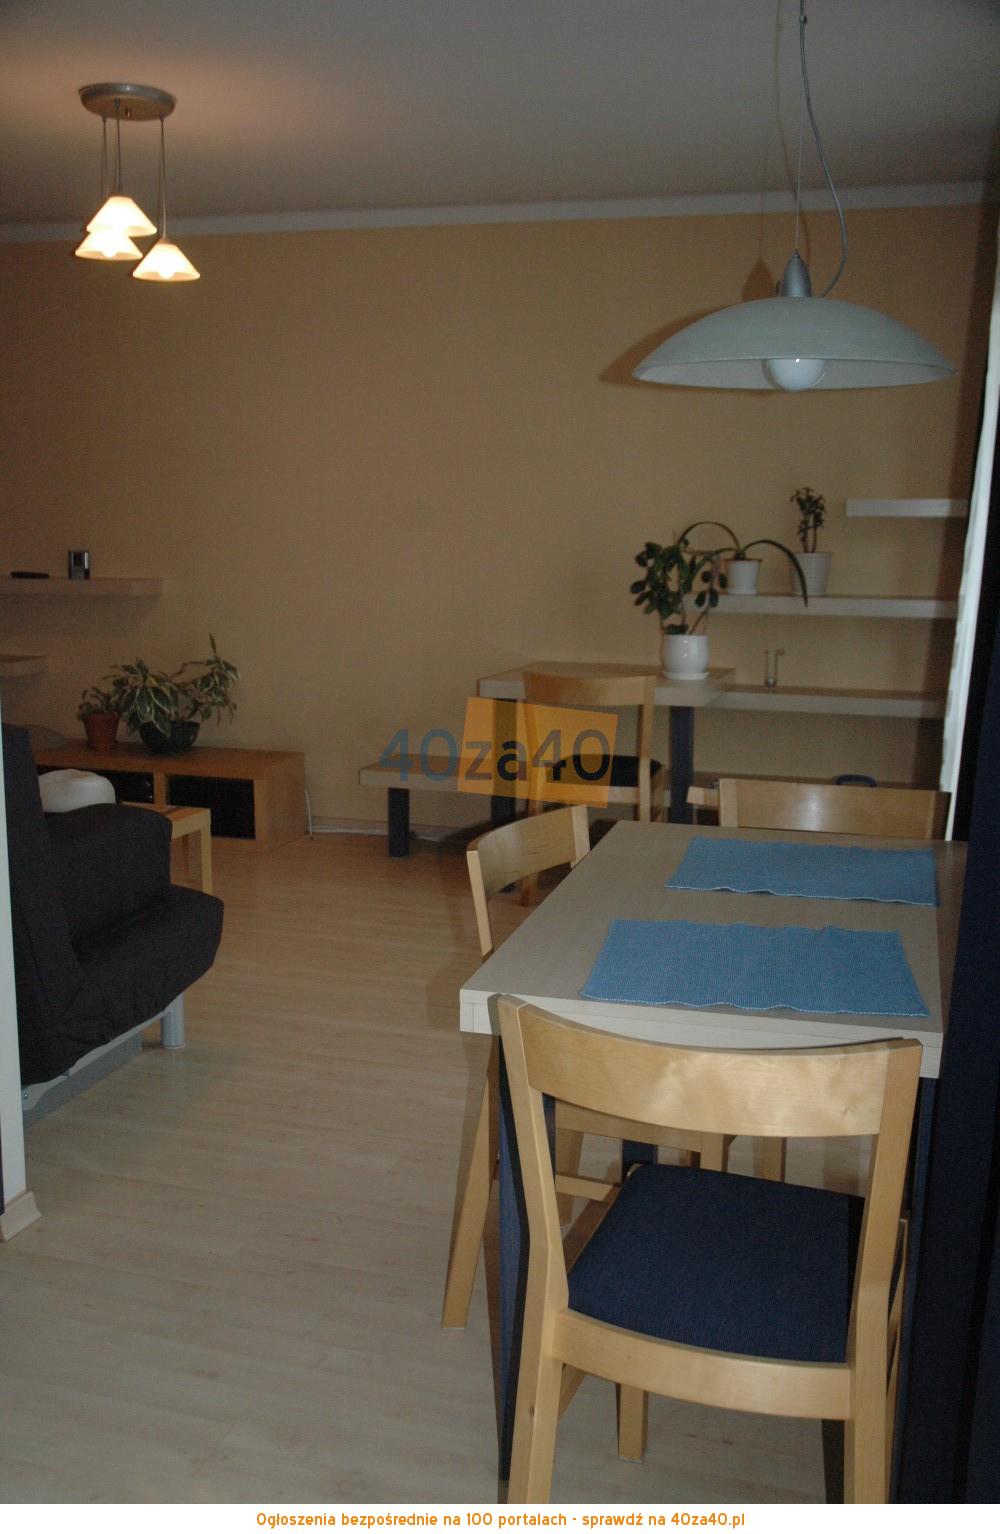 Mieszkanie do wynajęcia, pokoje: 1, cena: 900,00 PLN, Łódź, kontakt: 601416417